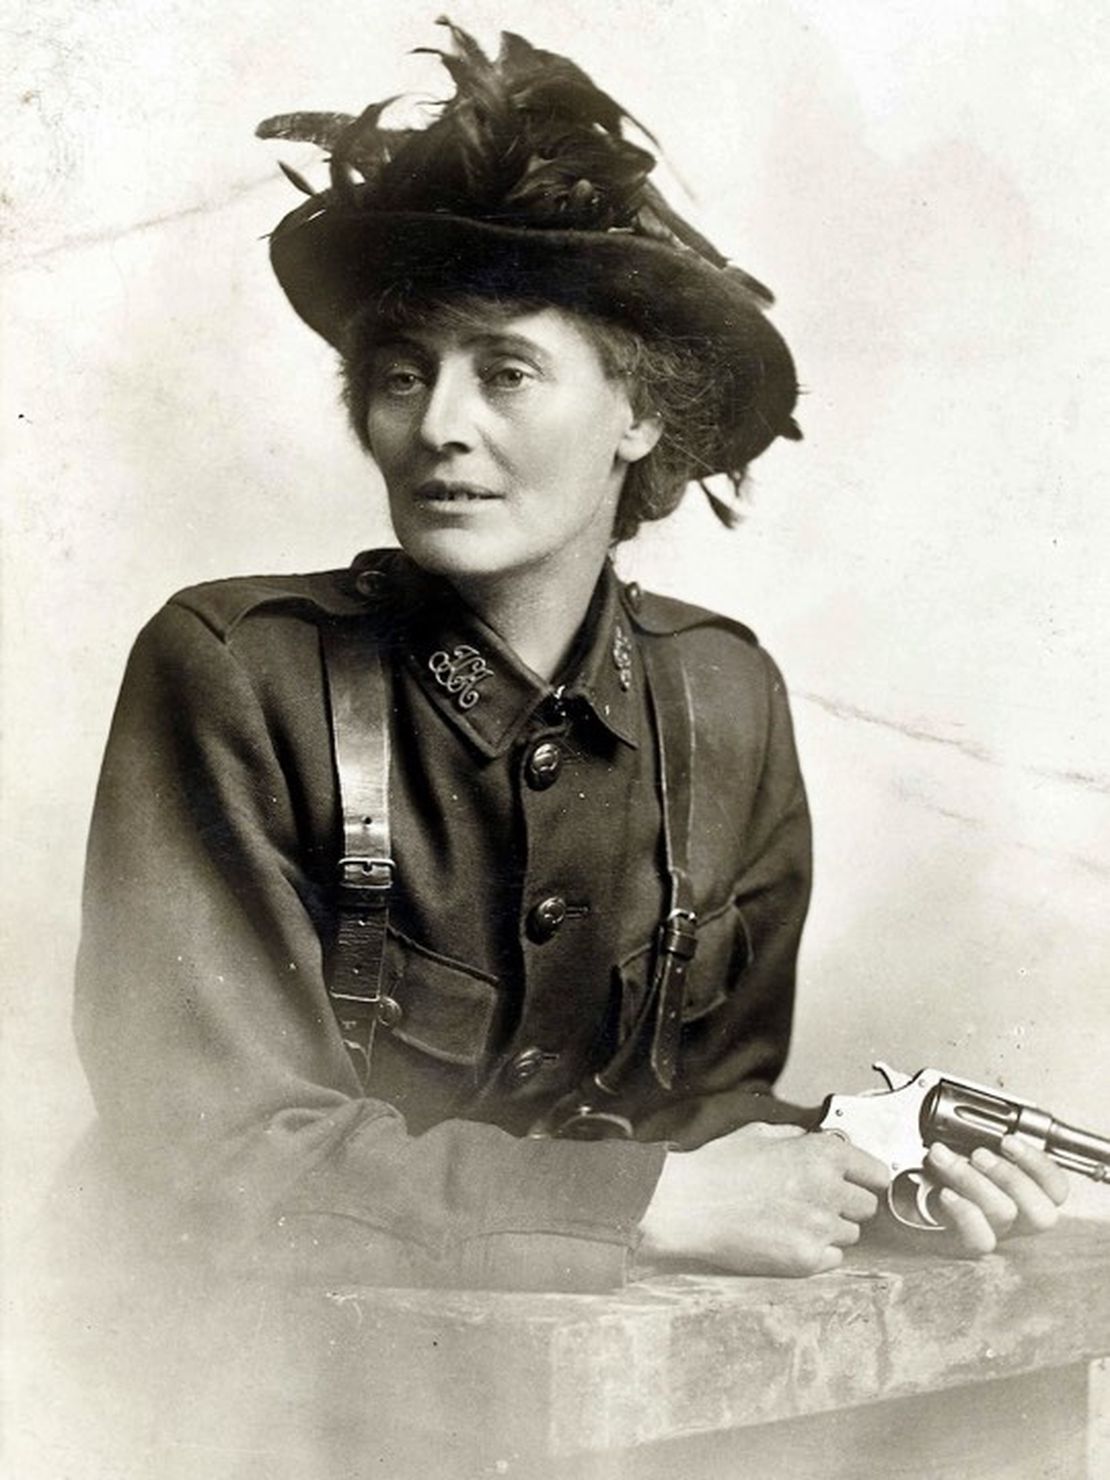 Countess Constance Markievicz, Irish patriot and revolutionary, born